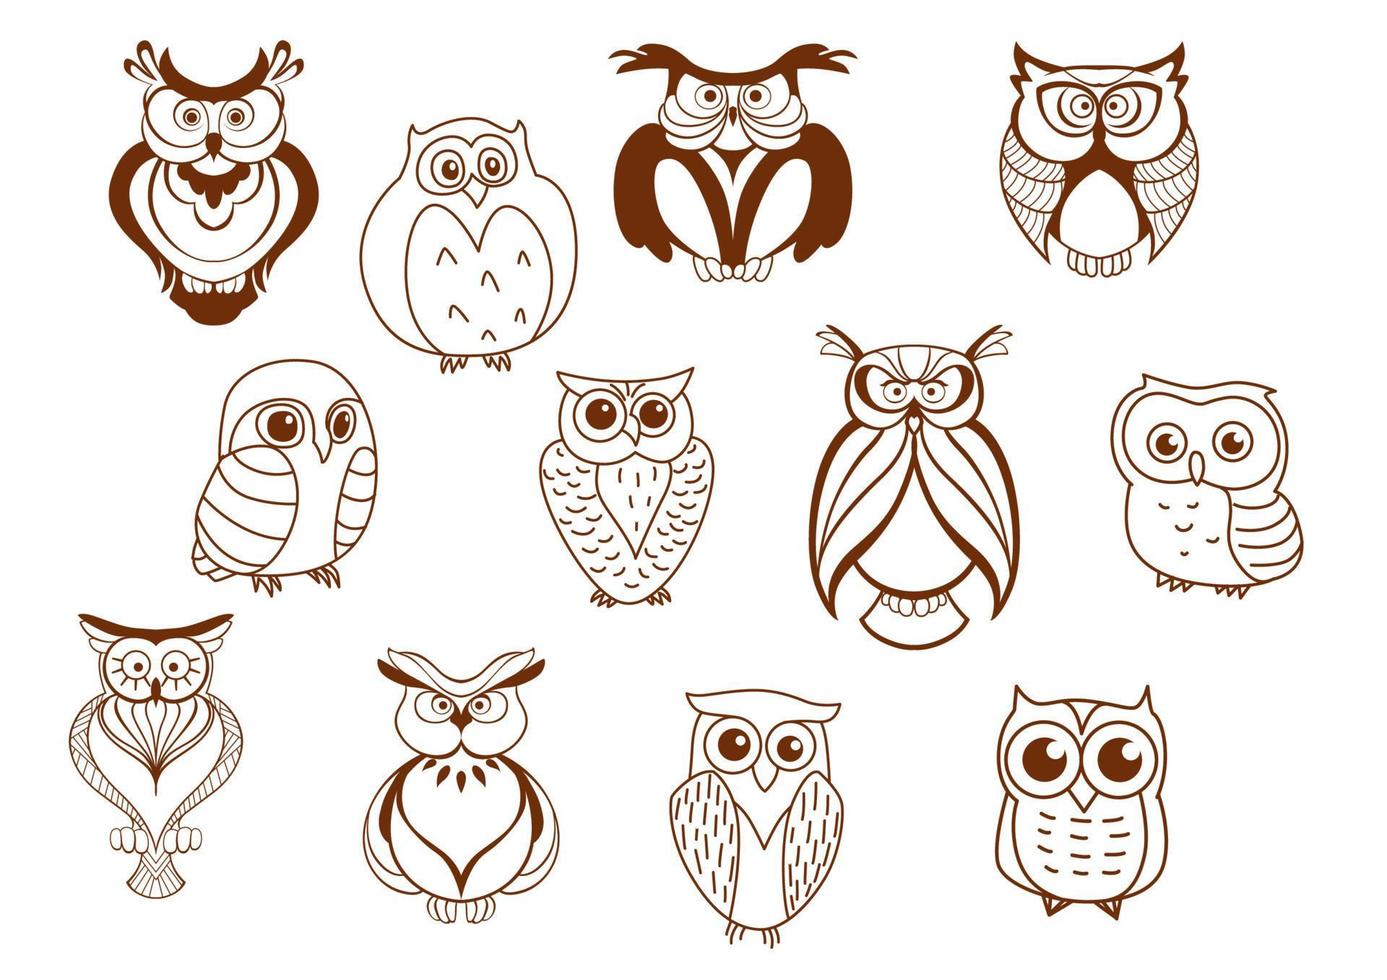 Cute cartoon vector owl characters